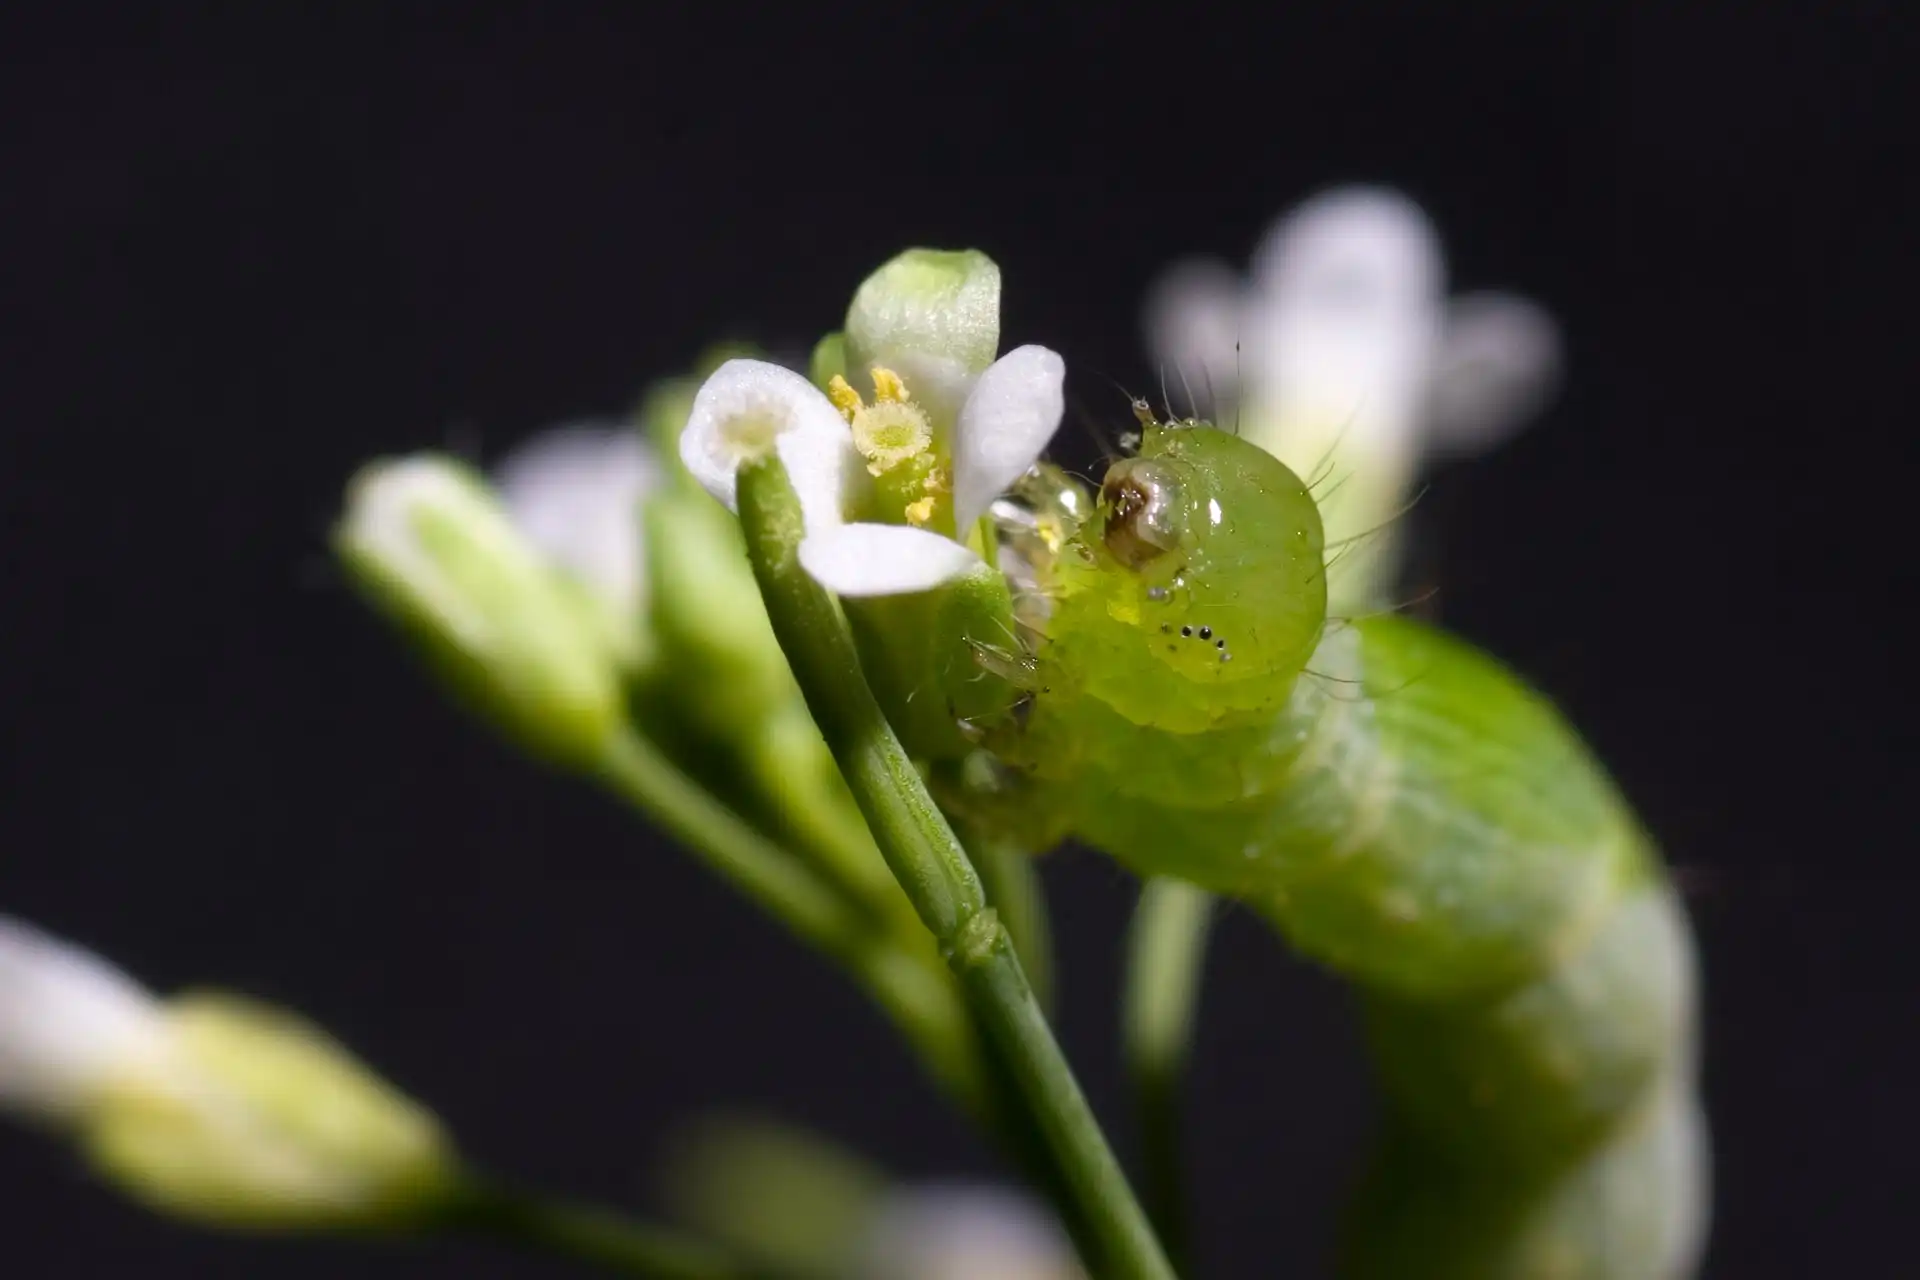 Image: Caterpillar on an Arabidopsis plant. Credit: Kurt Stepnitz, 2006 University Relations - Michigan State University